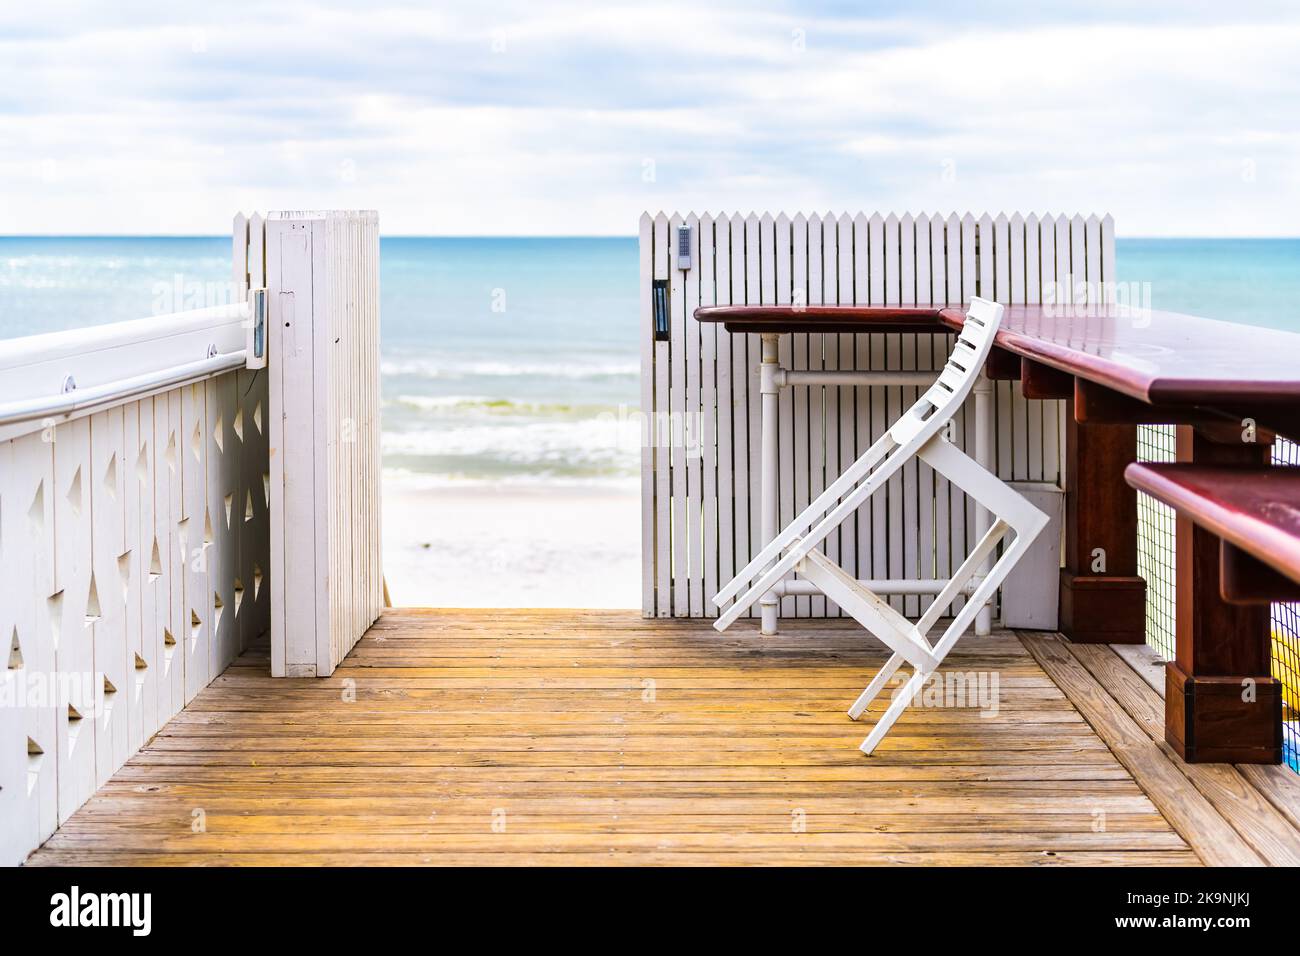 Seaside, Florida con un pabellón de madera blanca con vistas a las olas de agua del Golfo de México y sillas de cafetería de restaurante, mesas por valla Foto de stock